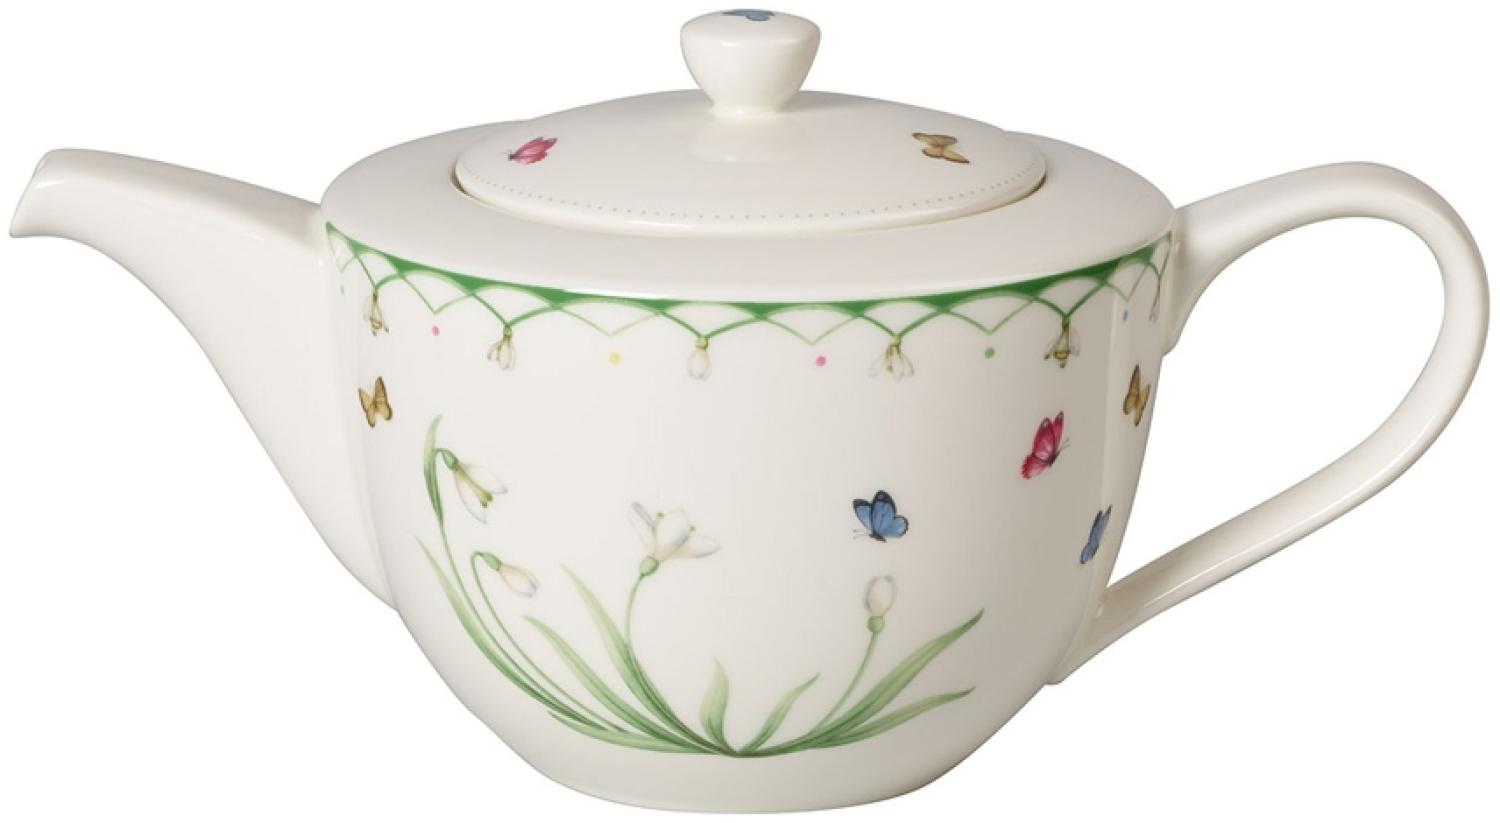 Villeroy & Boch Vorteilset 2 Stück Colourful Spring Teekanne 6 Pers. grün 1486630460 und Geschenk + Spende Bild 1